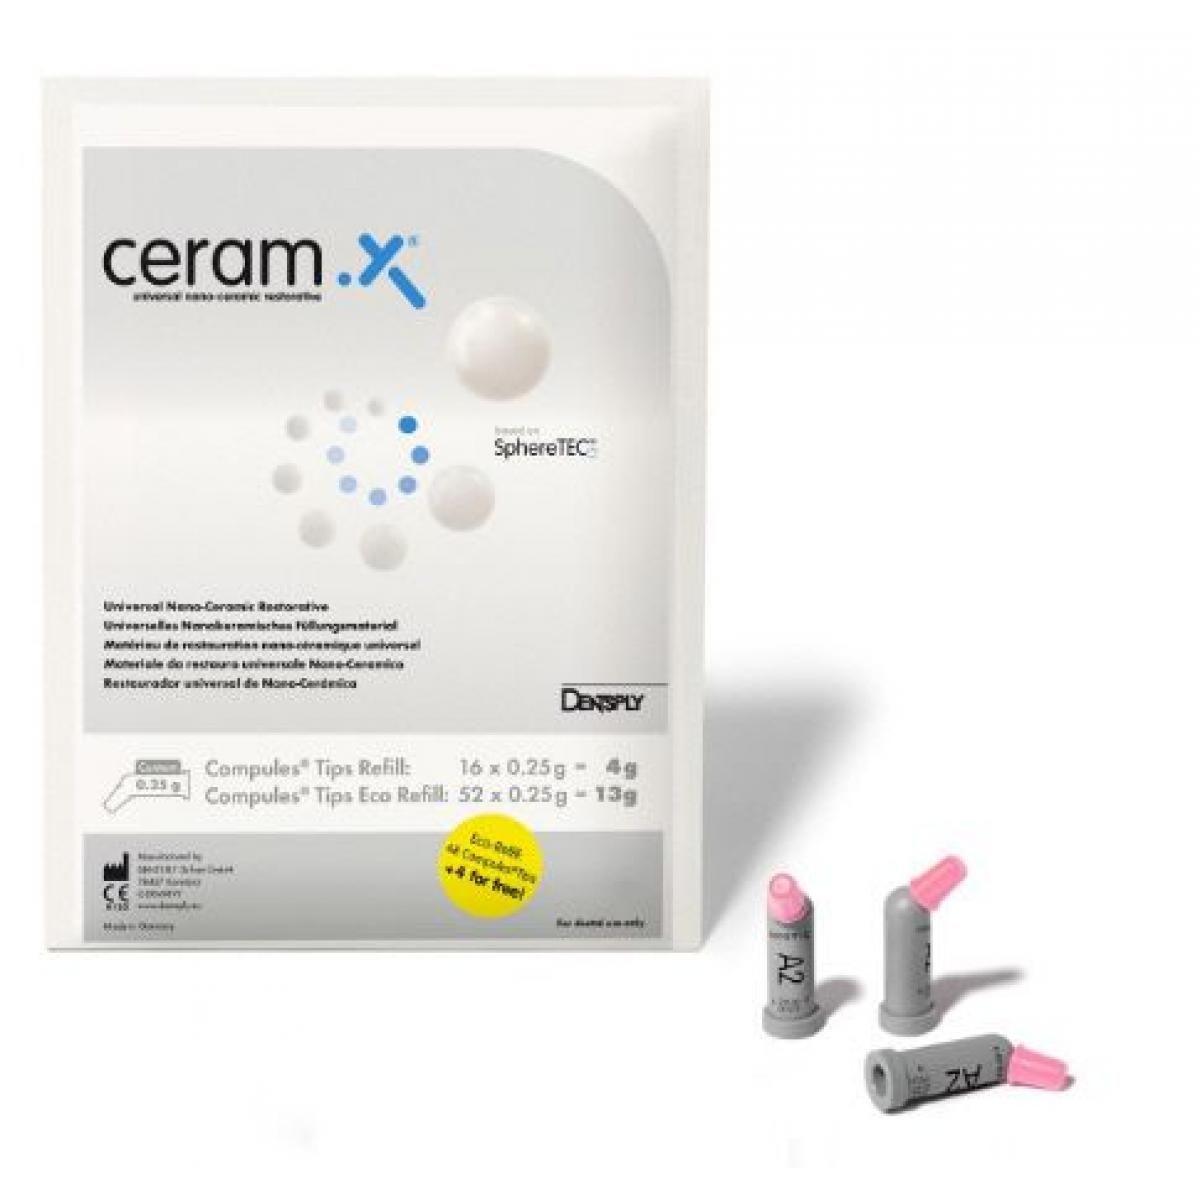 CERAM X SPECTRA HV COMPULES A2 16U DENTSPLY -